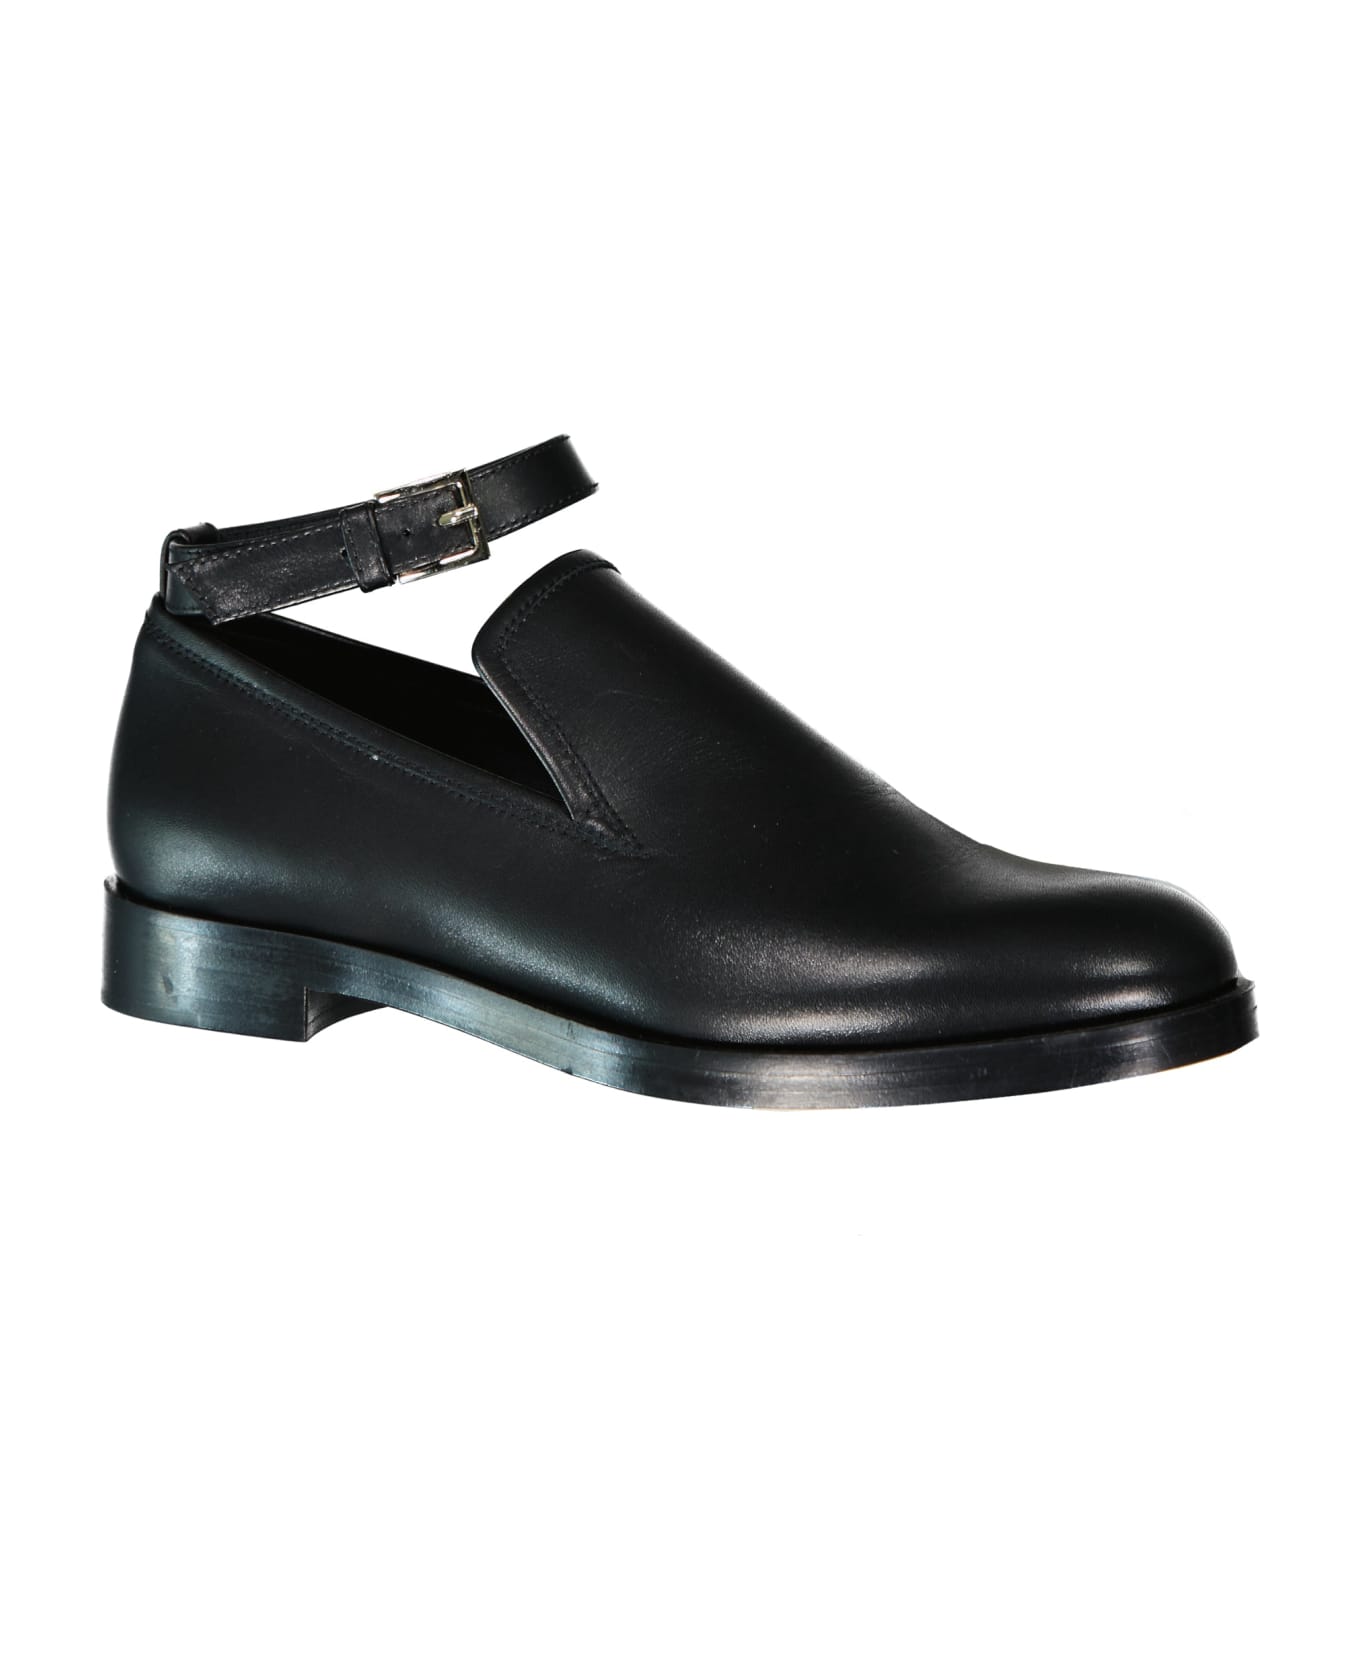 Max Mara Accessori Lawrie Leather Loafers - Black フラットシューズ